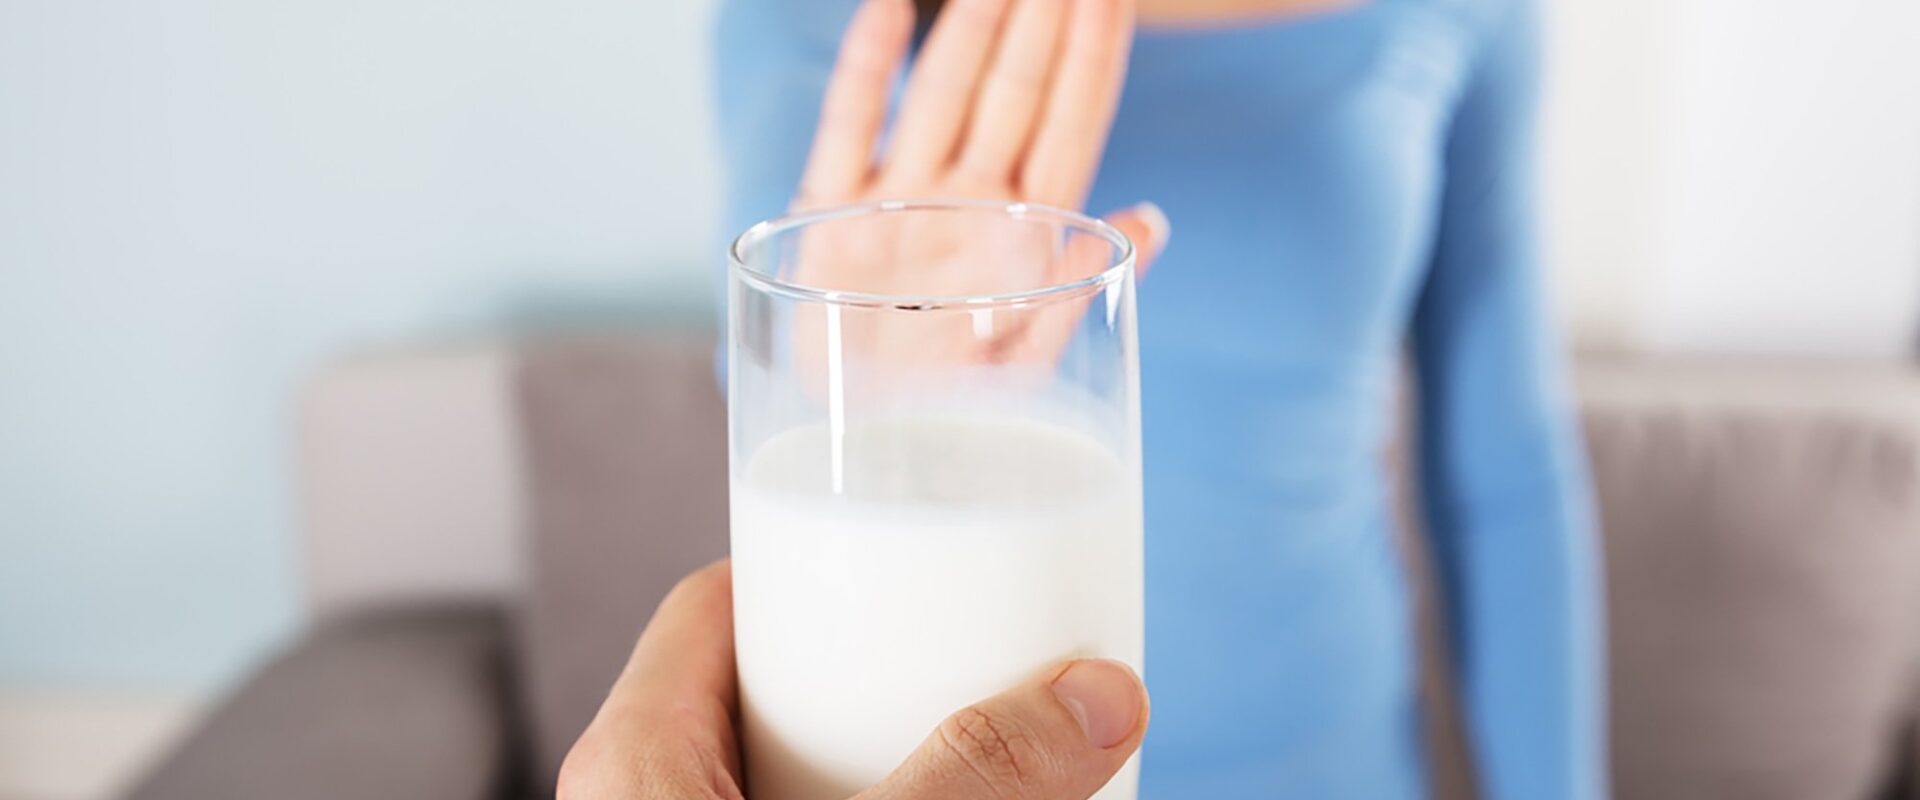 Бологовскому заводу запретили выпускать молочную продукцию